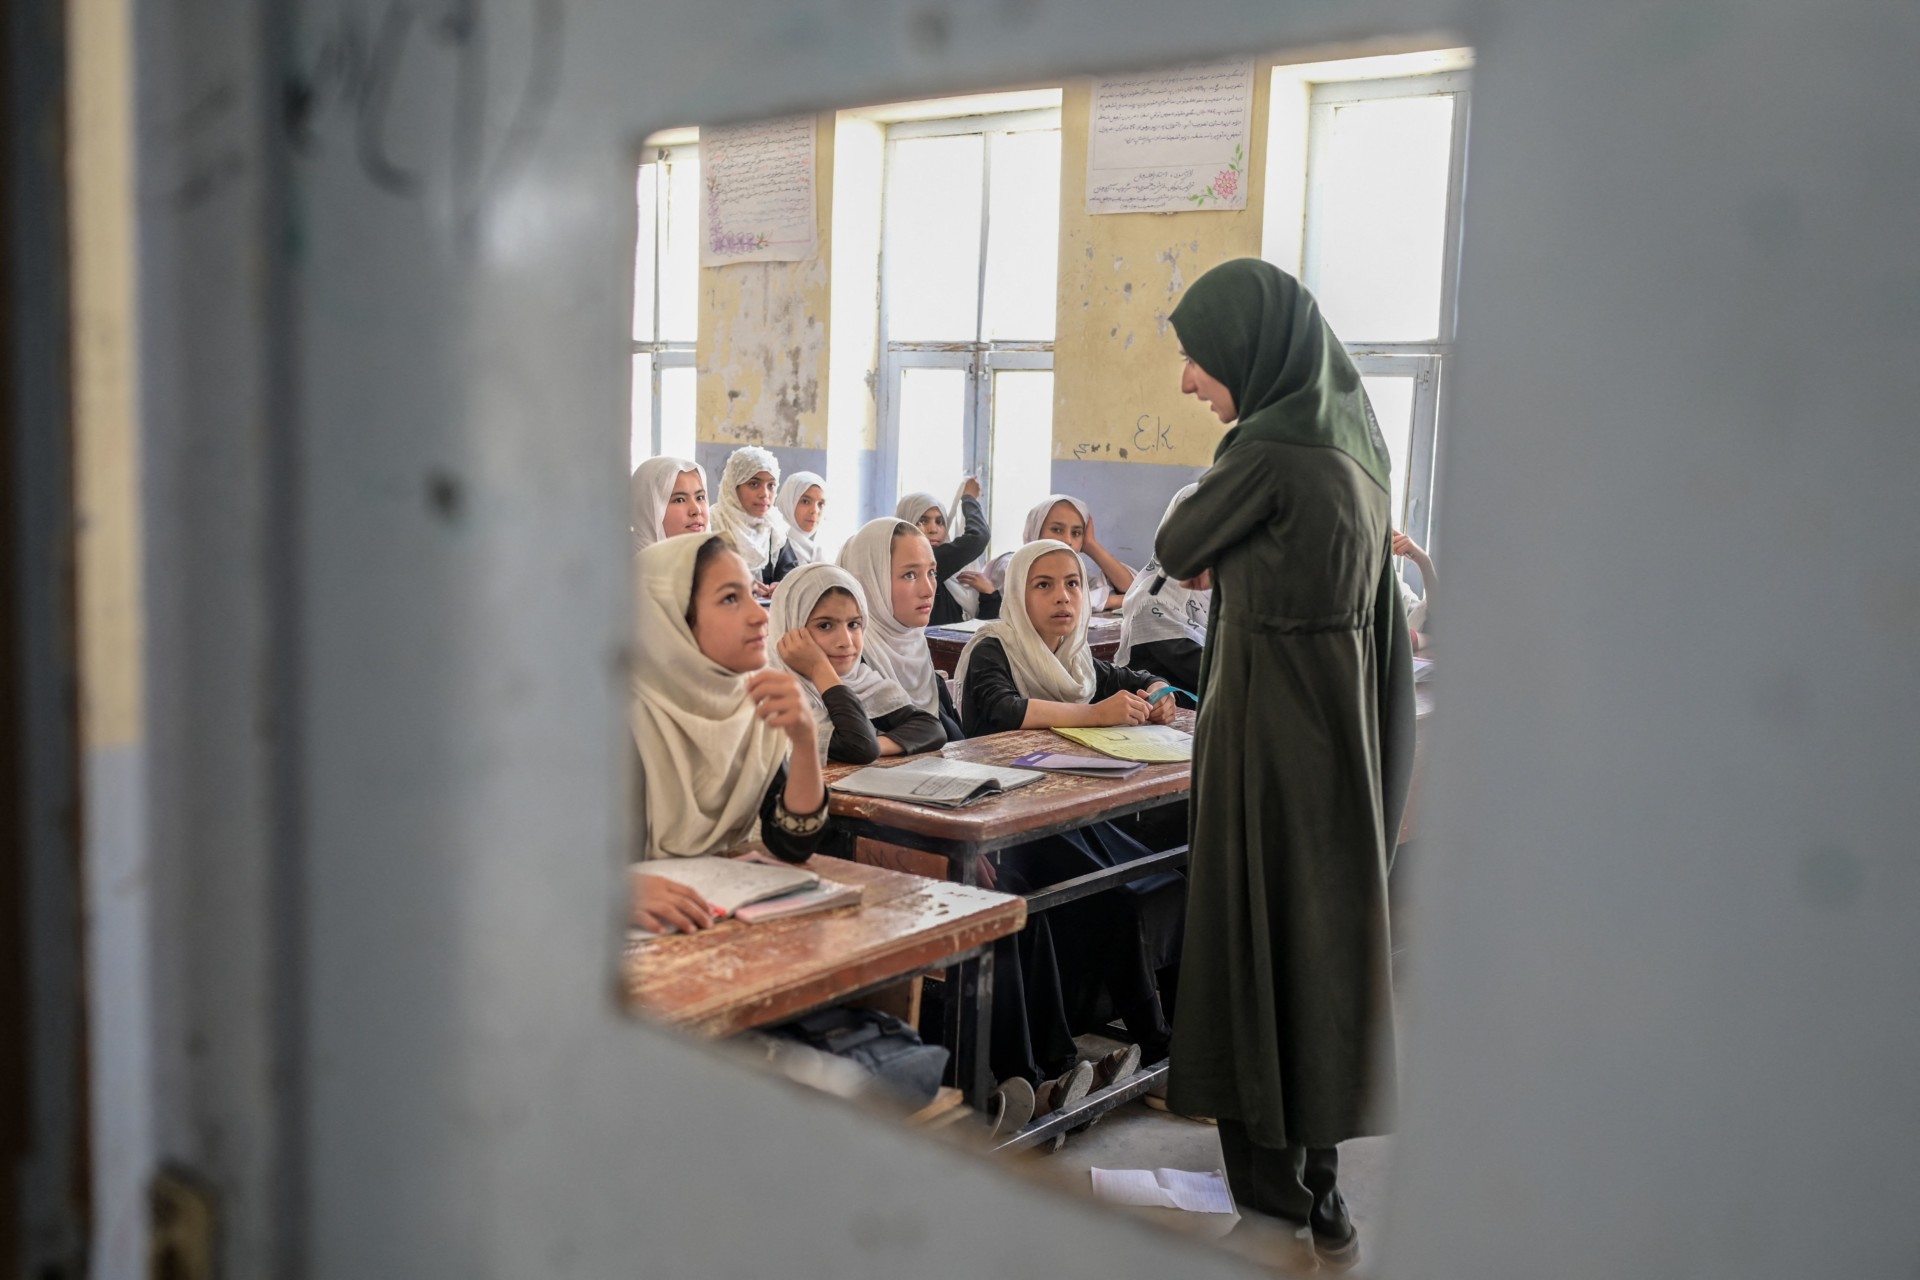 In Kandahar, It’s a Dangerous Time for Women